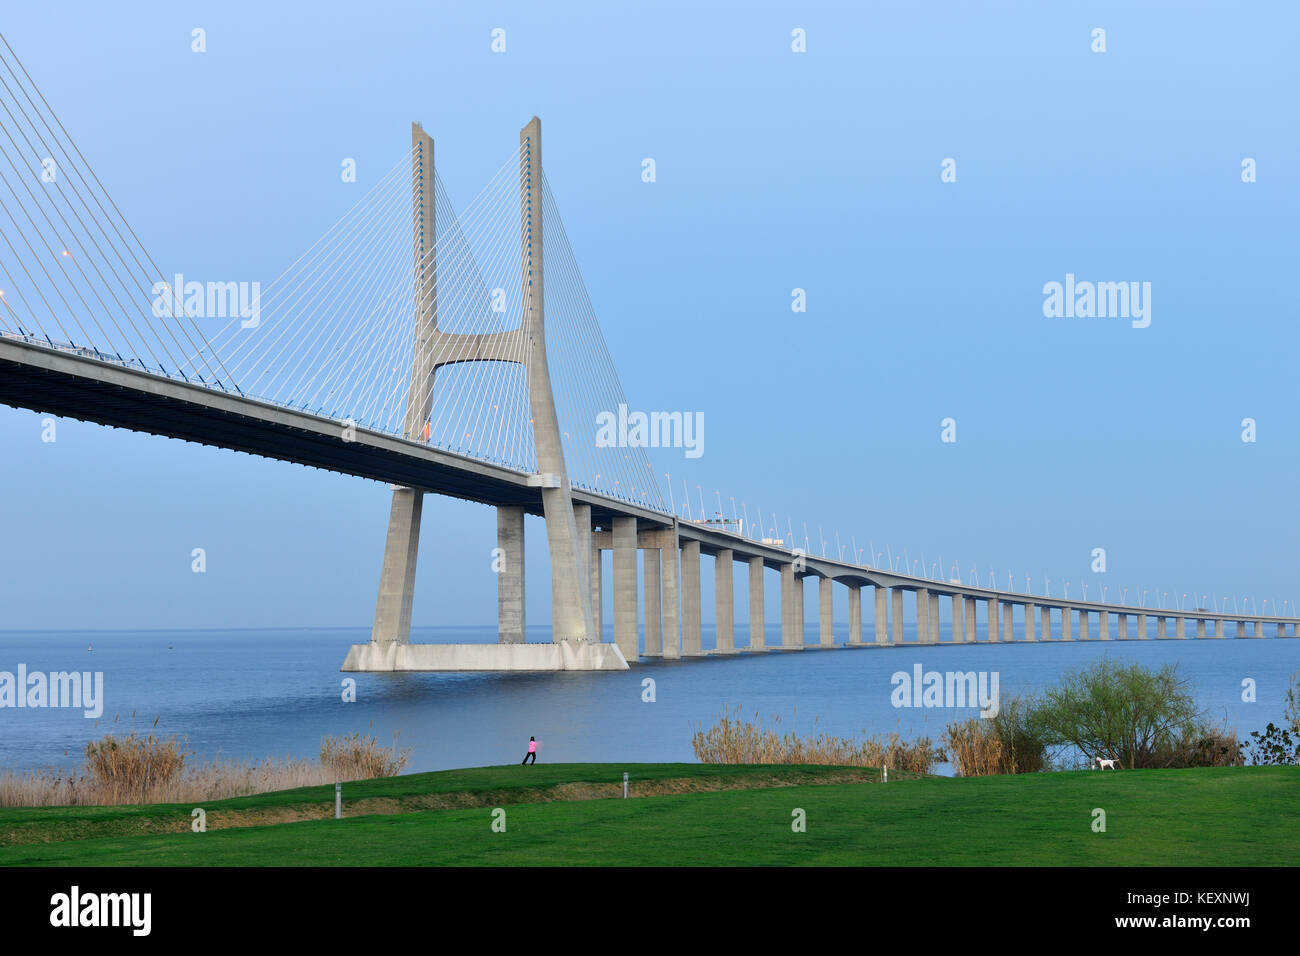 El Puente Vasco da Gama sobre el río Tajo (Tejo river), el puente más largo de Europa. Lisboa, Portugal Foto de stock